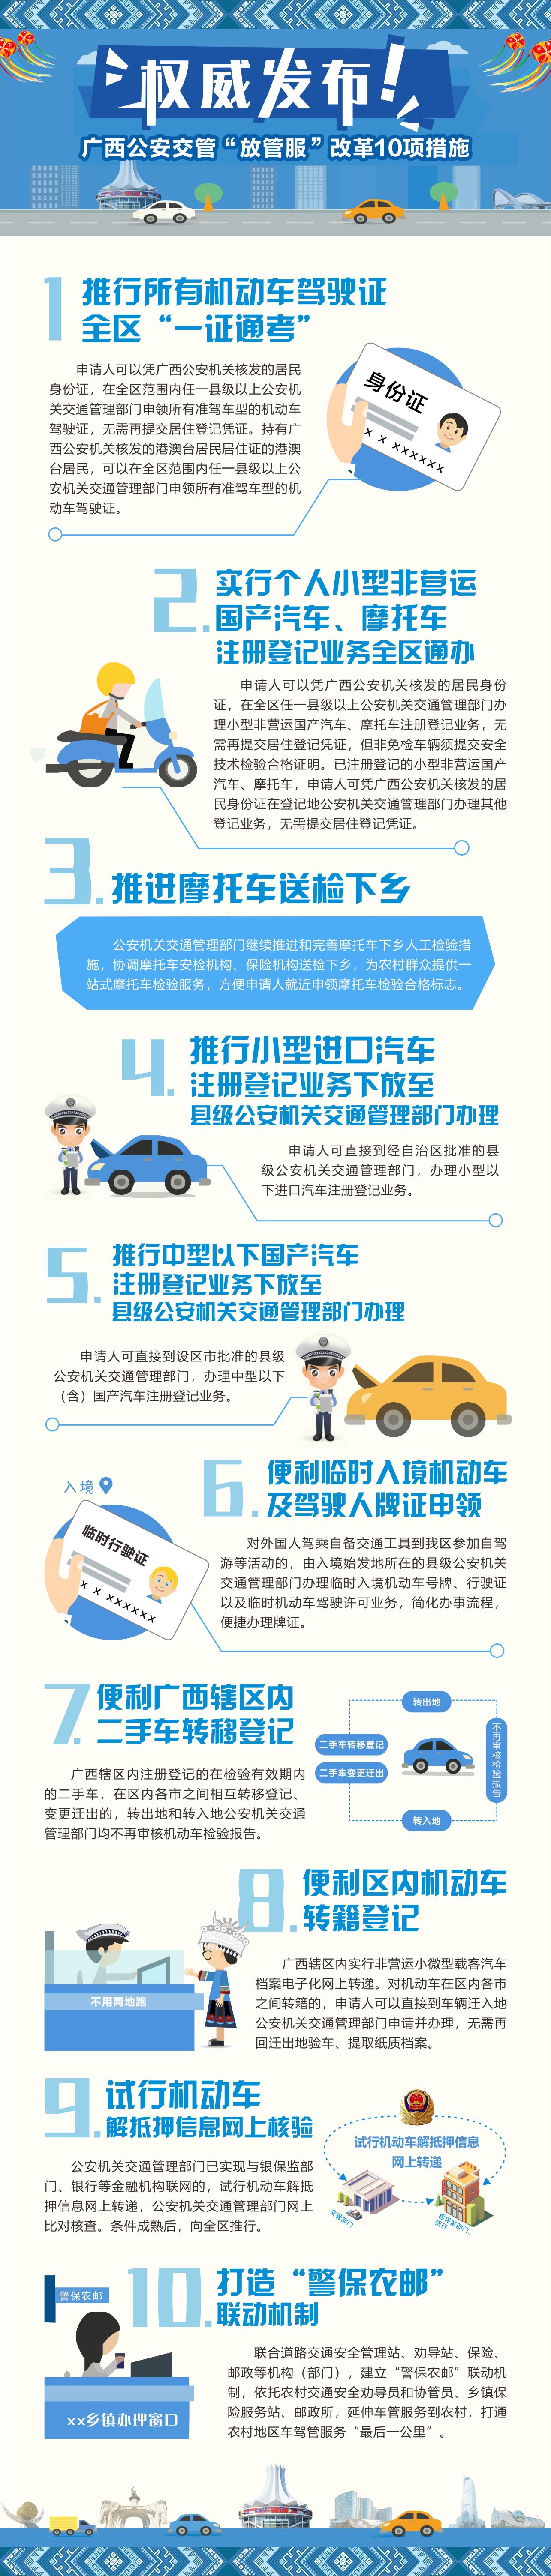 廣西推出10項公安交管“放管服”改革新措施